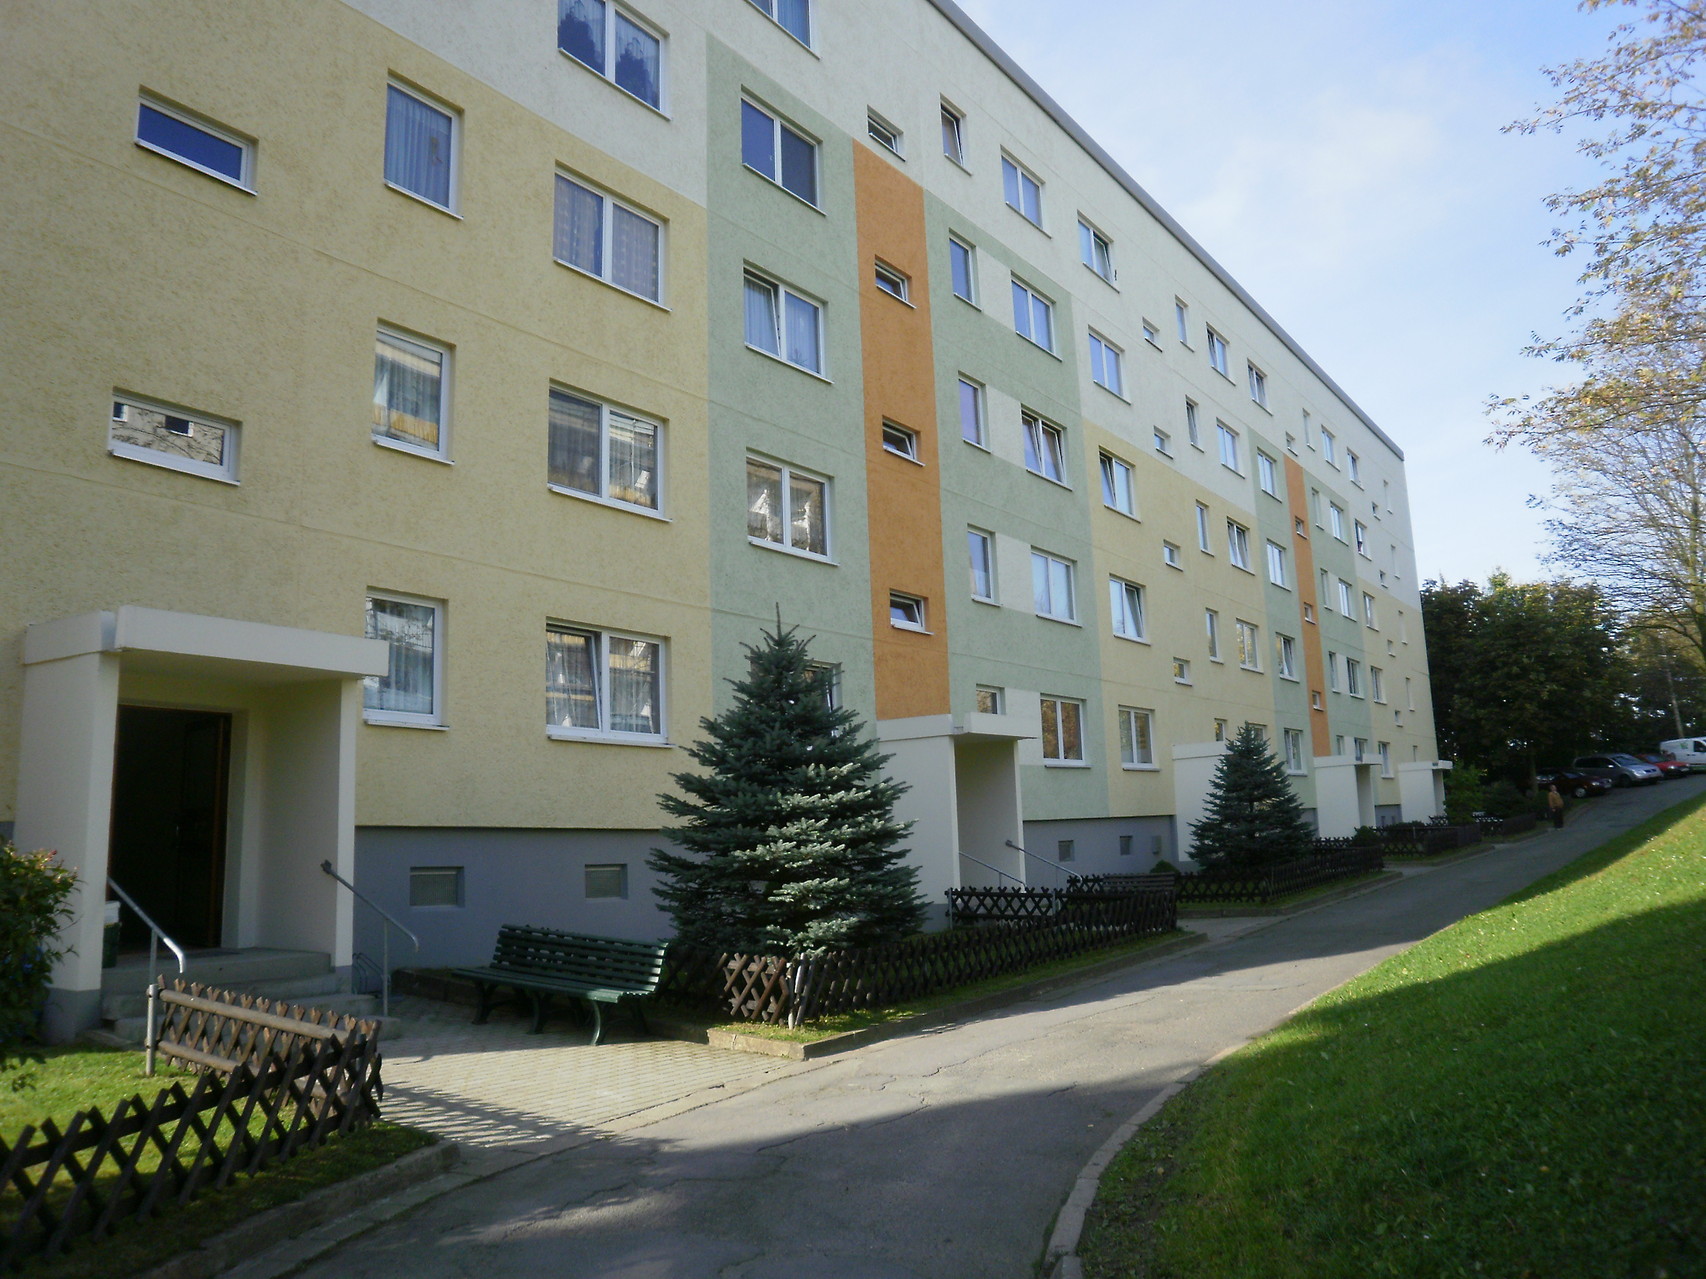 Wohngebiet in Zschopau der Wohnungsgenossenschaft Zschopautal eG in Zschopau